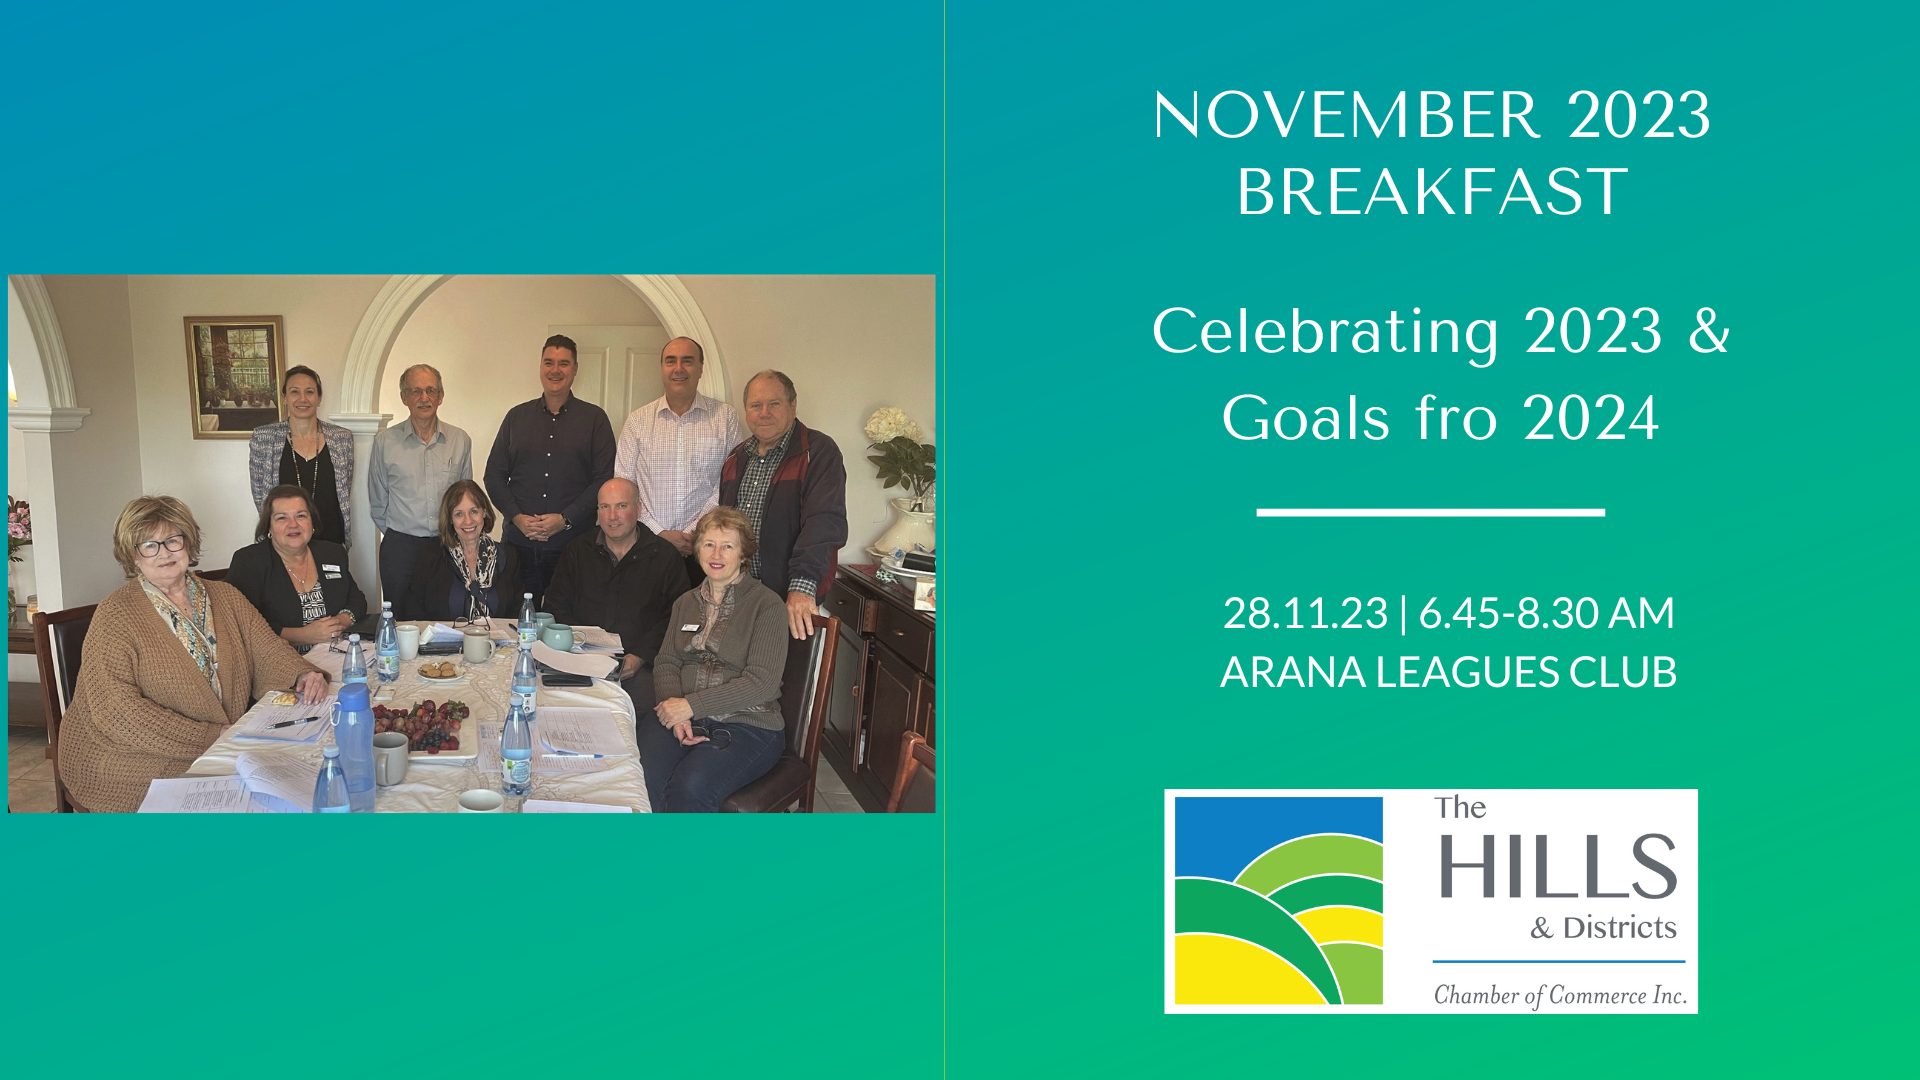 Breakfast Meeting » November 2023 Breakfast